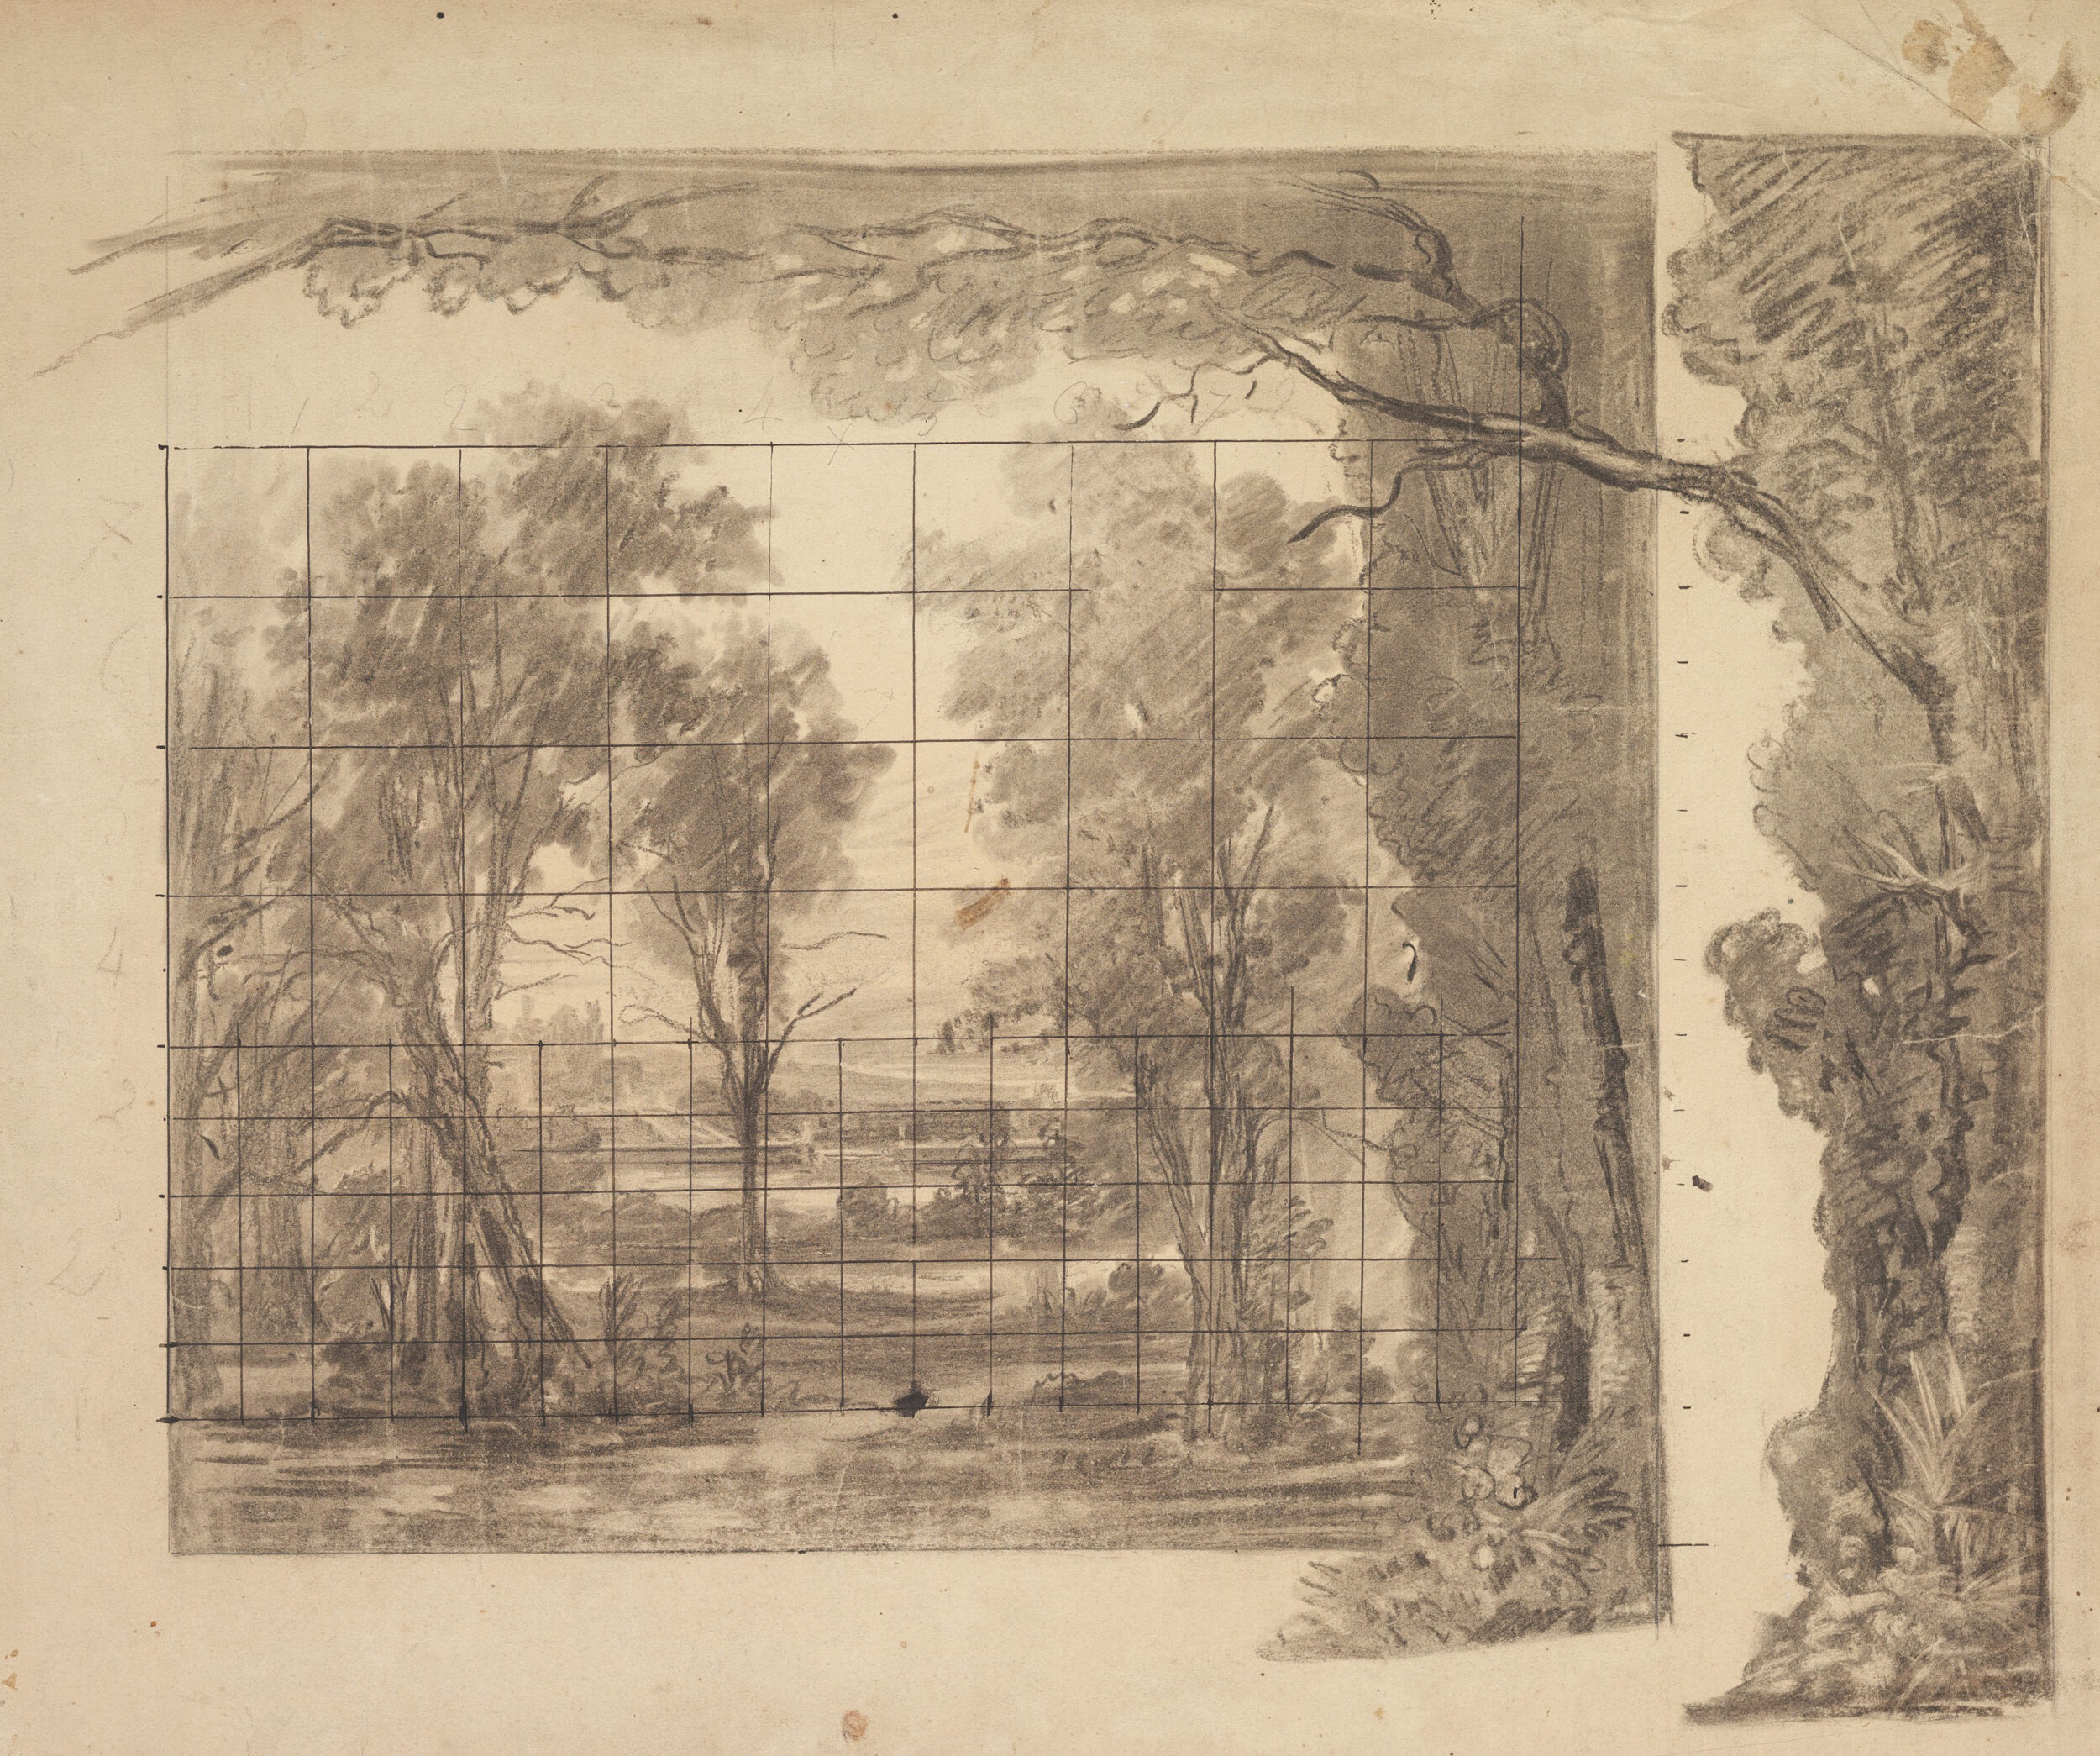 Eugène Cicéri, Dessin préparatoire pour la maquette d’un décor de forêt, XIXe siècle. Metropolitan Museum of Art.